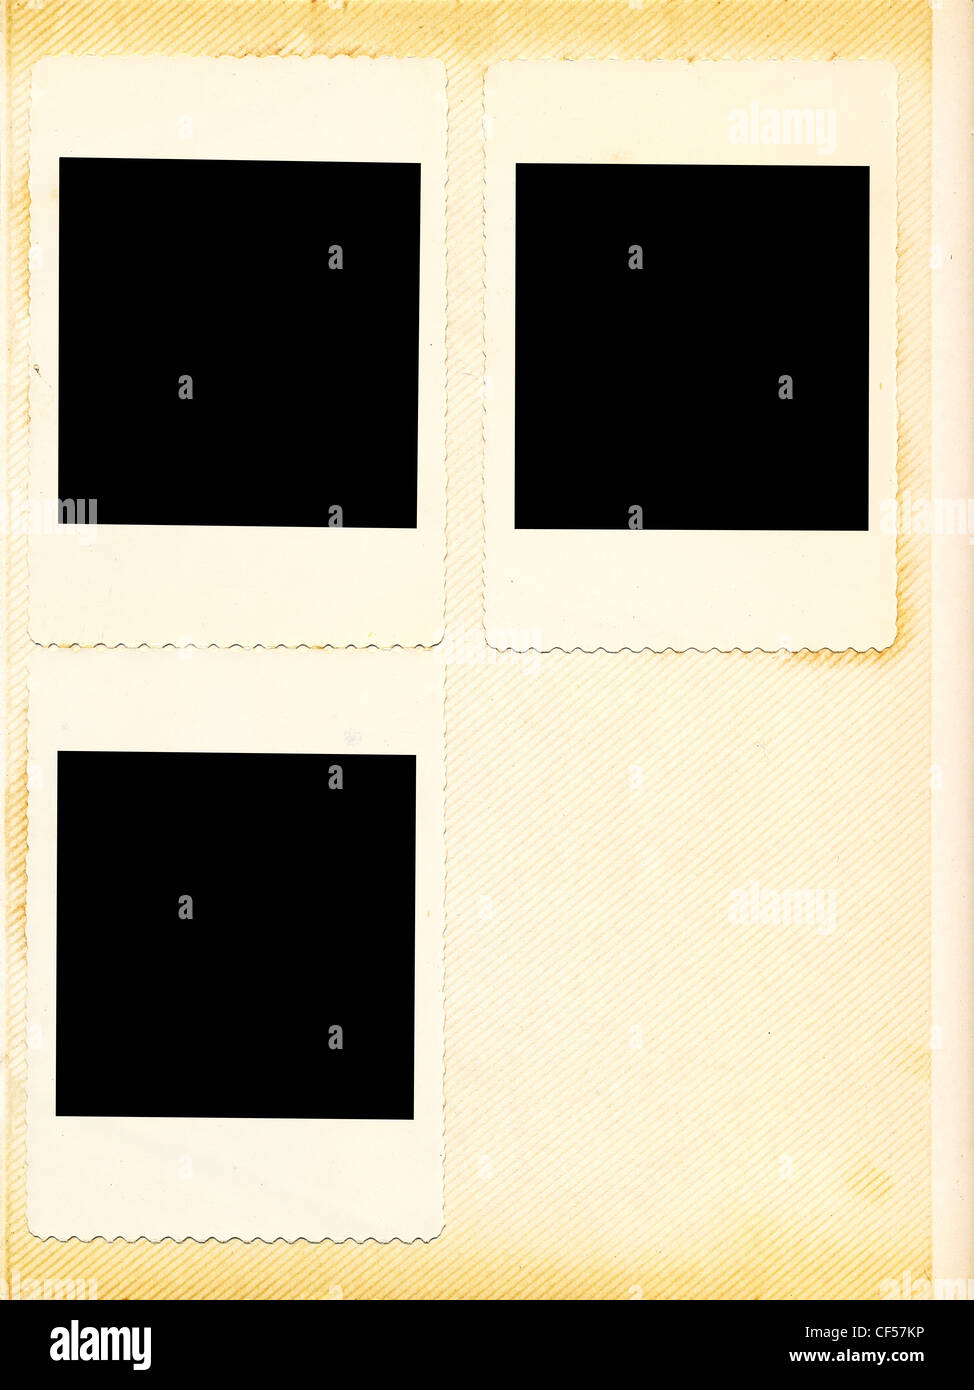 Alte, vergilbte Seite von einem alten Fotoalbum mit drei Bilderrahmen Stockfoto